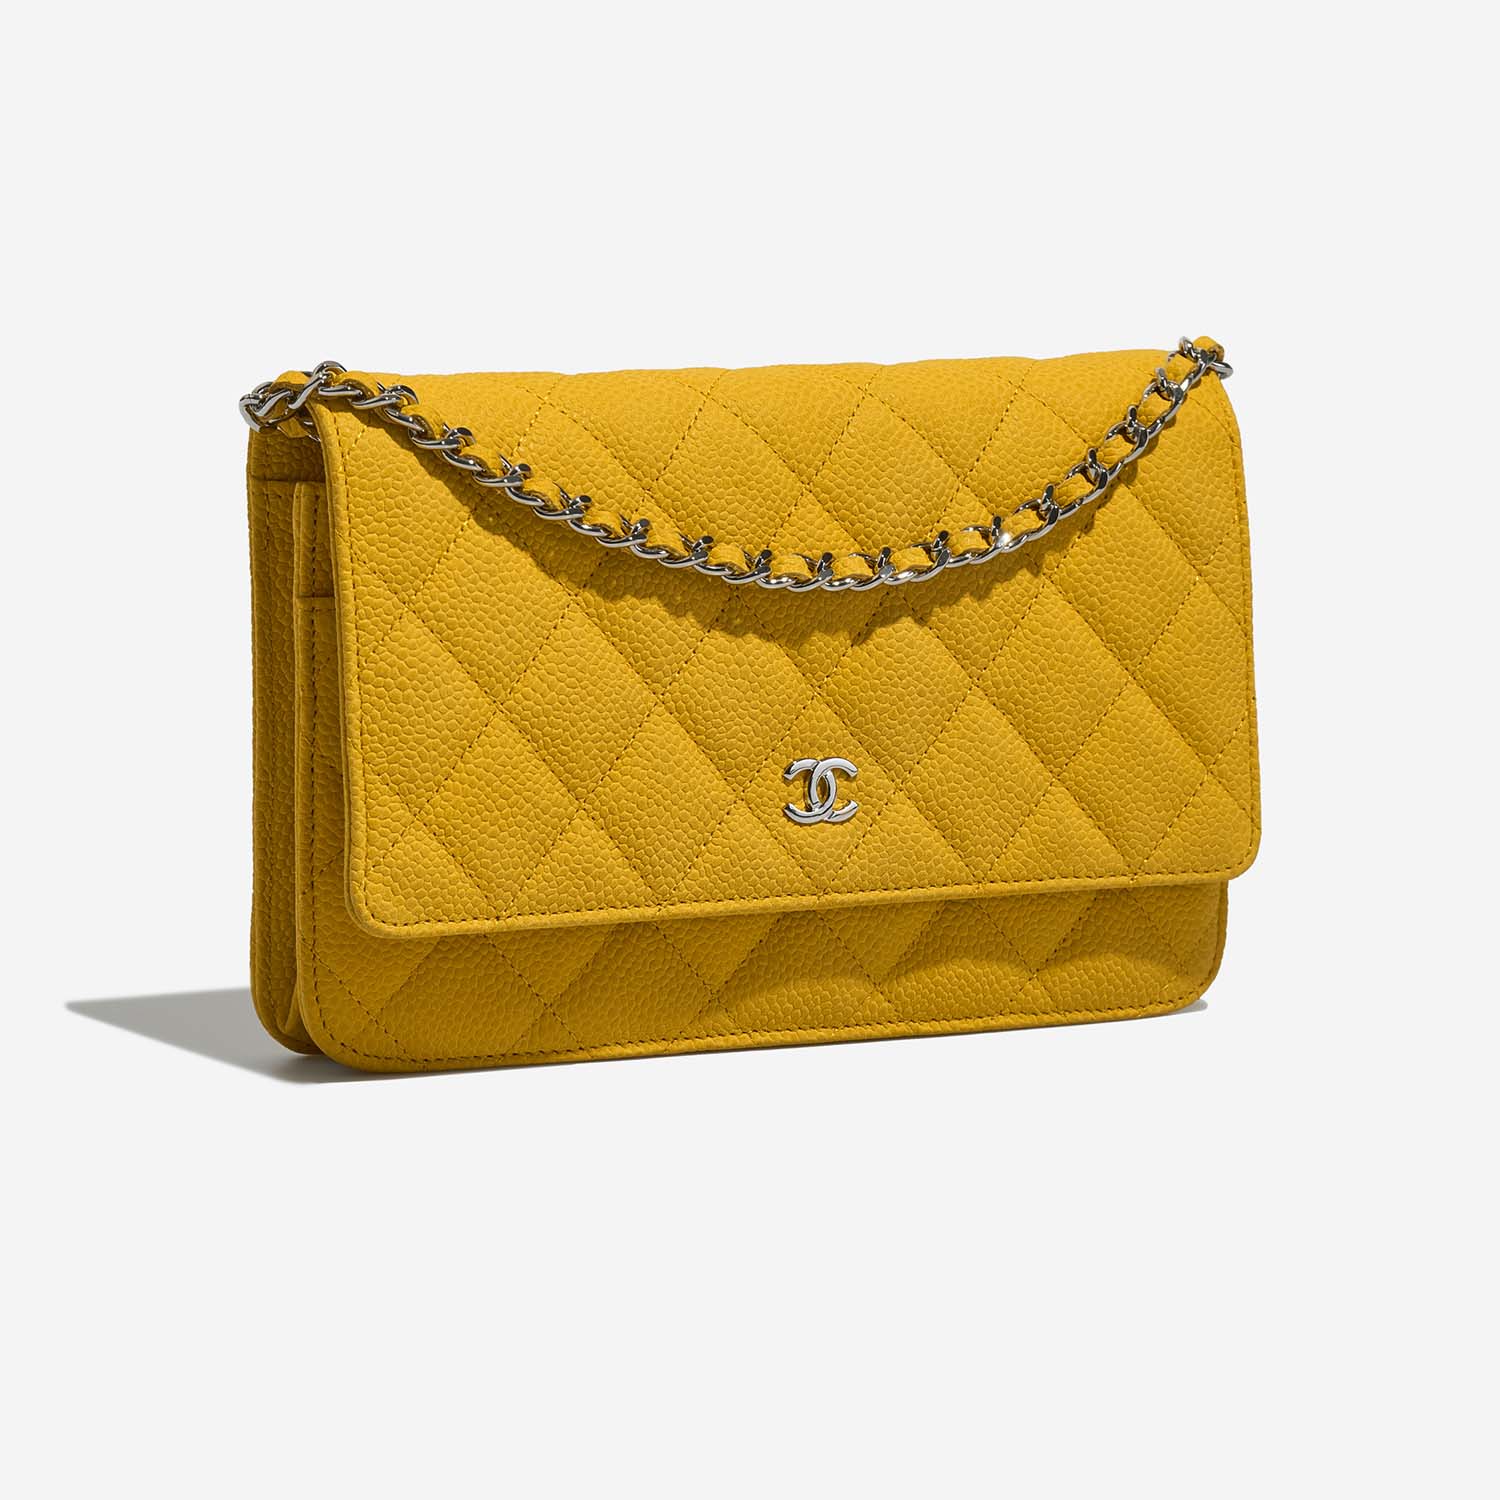 Chanel Timeless WOC Yellow Side Front | Verkaufen Sie Ihre Designer-Tasche auf Saclab.com